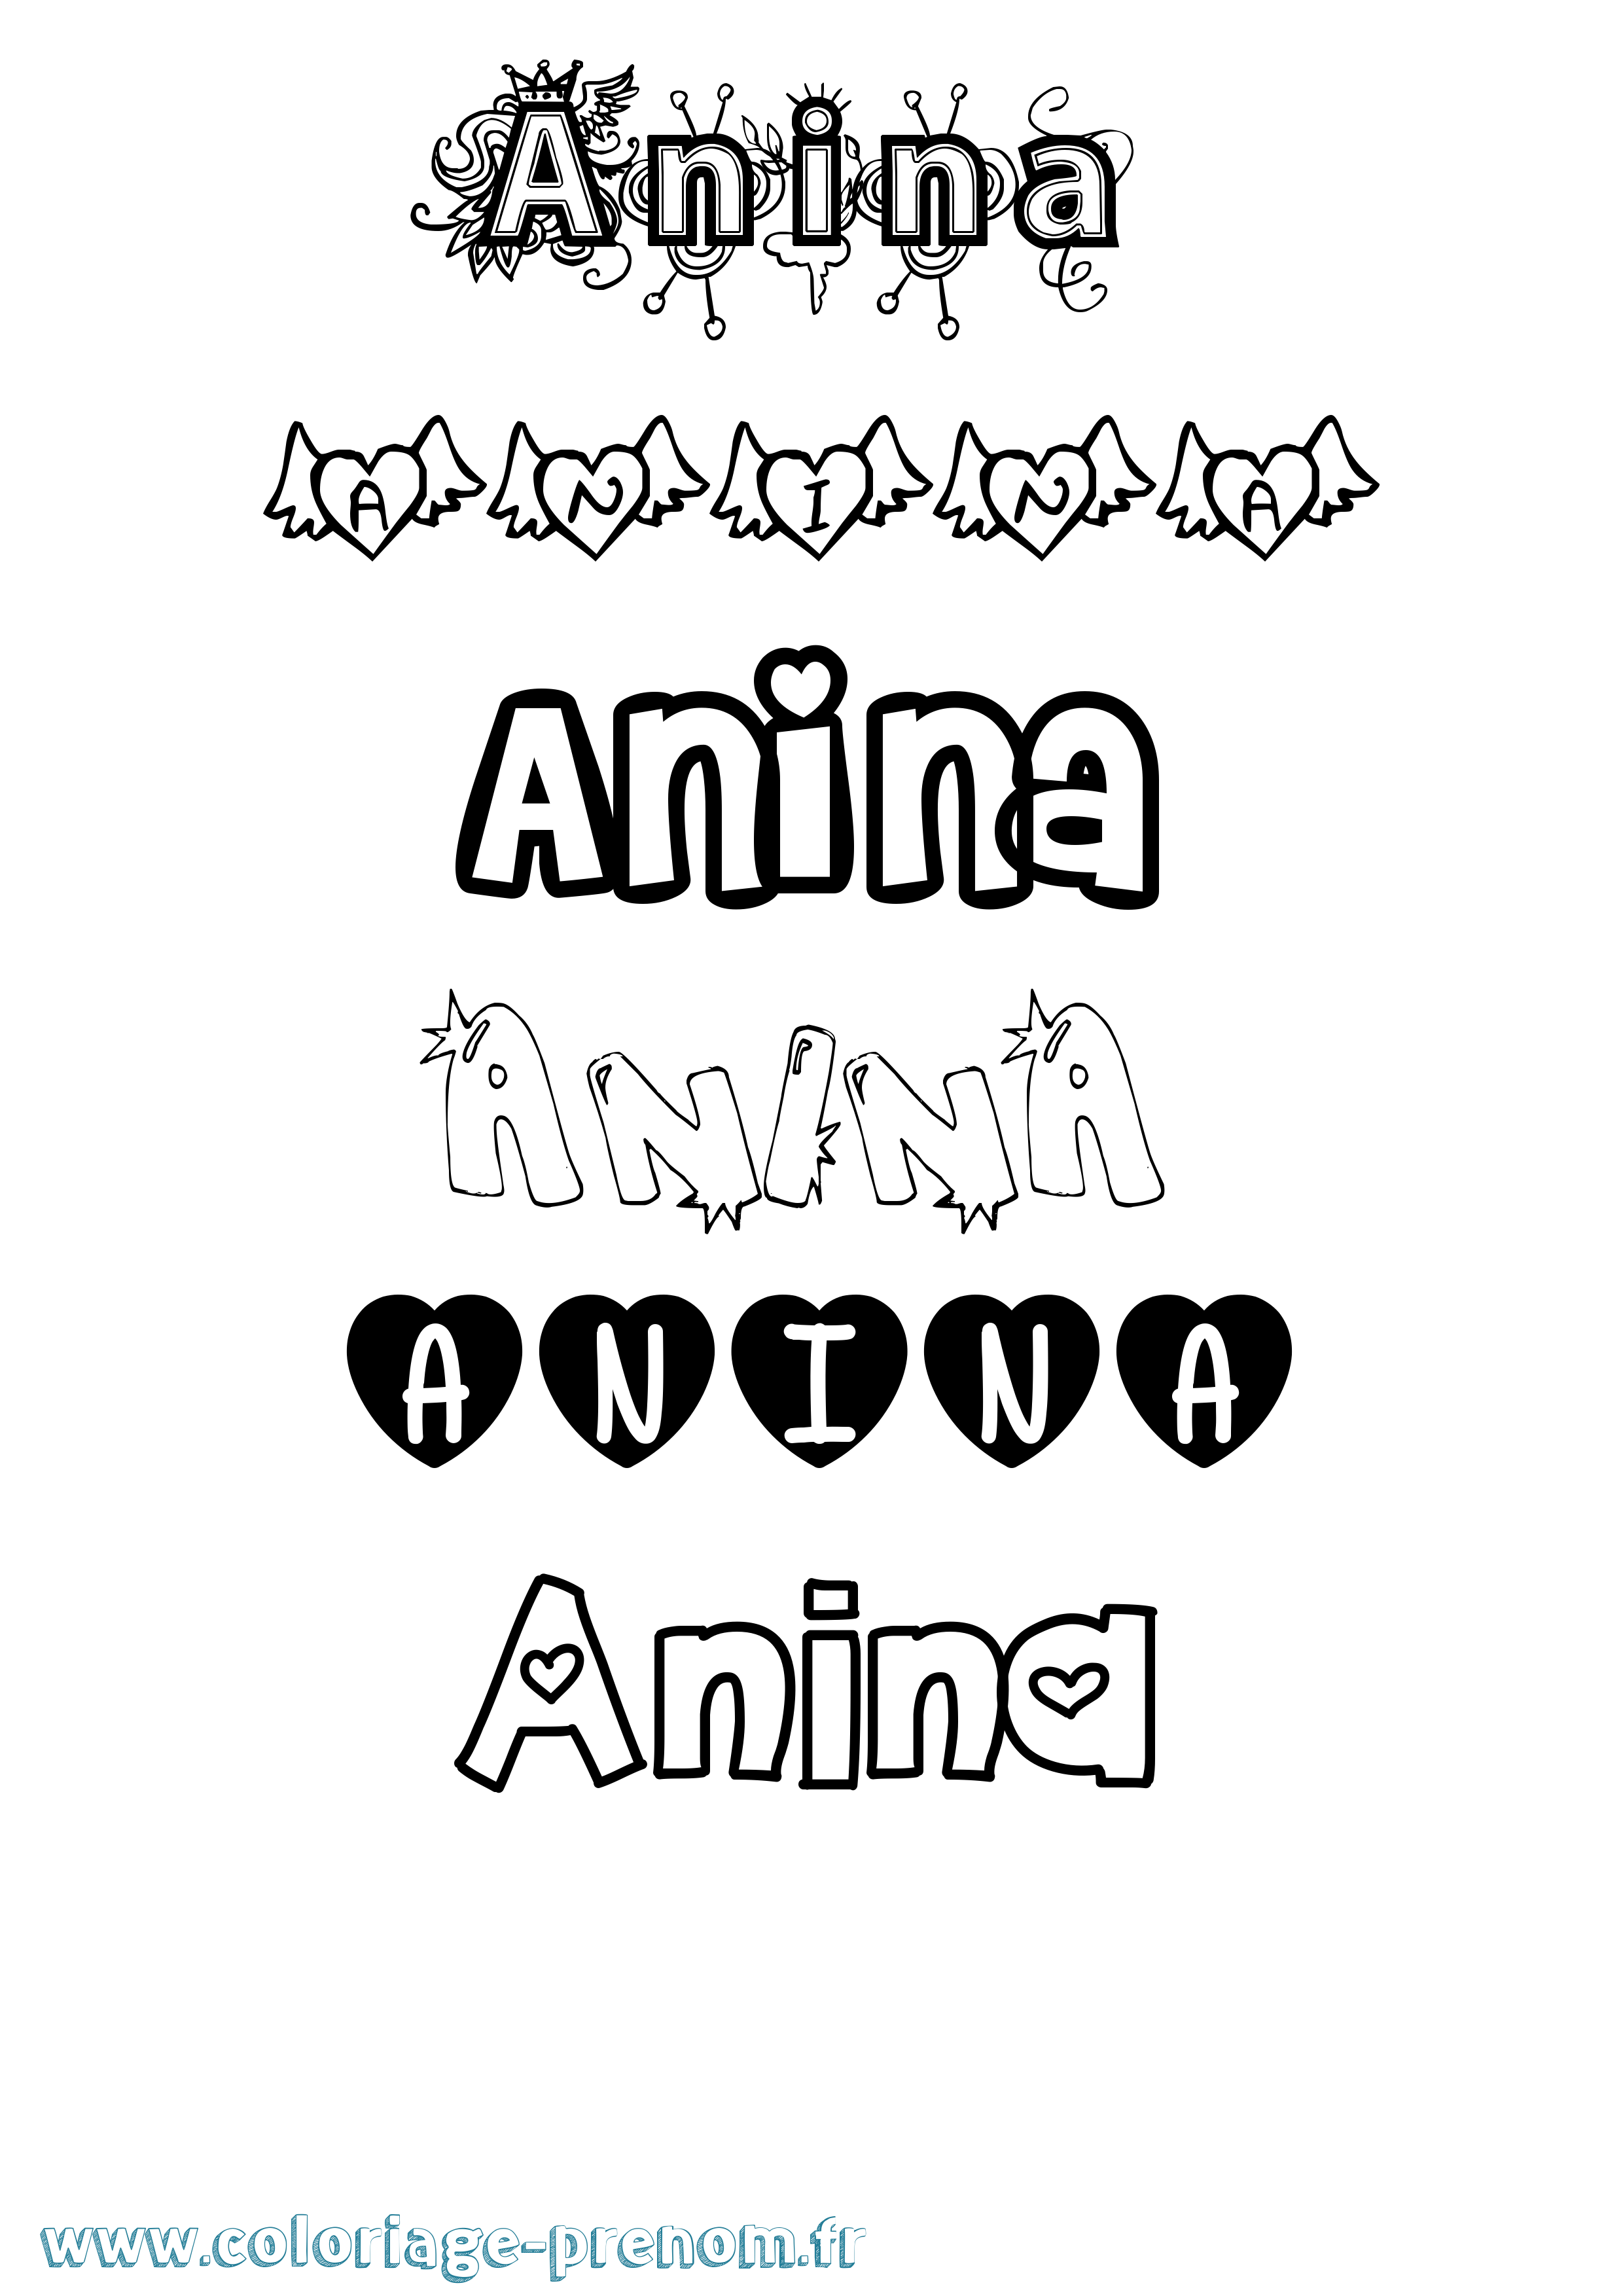 Coloriage prénom Anina Girly